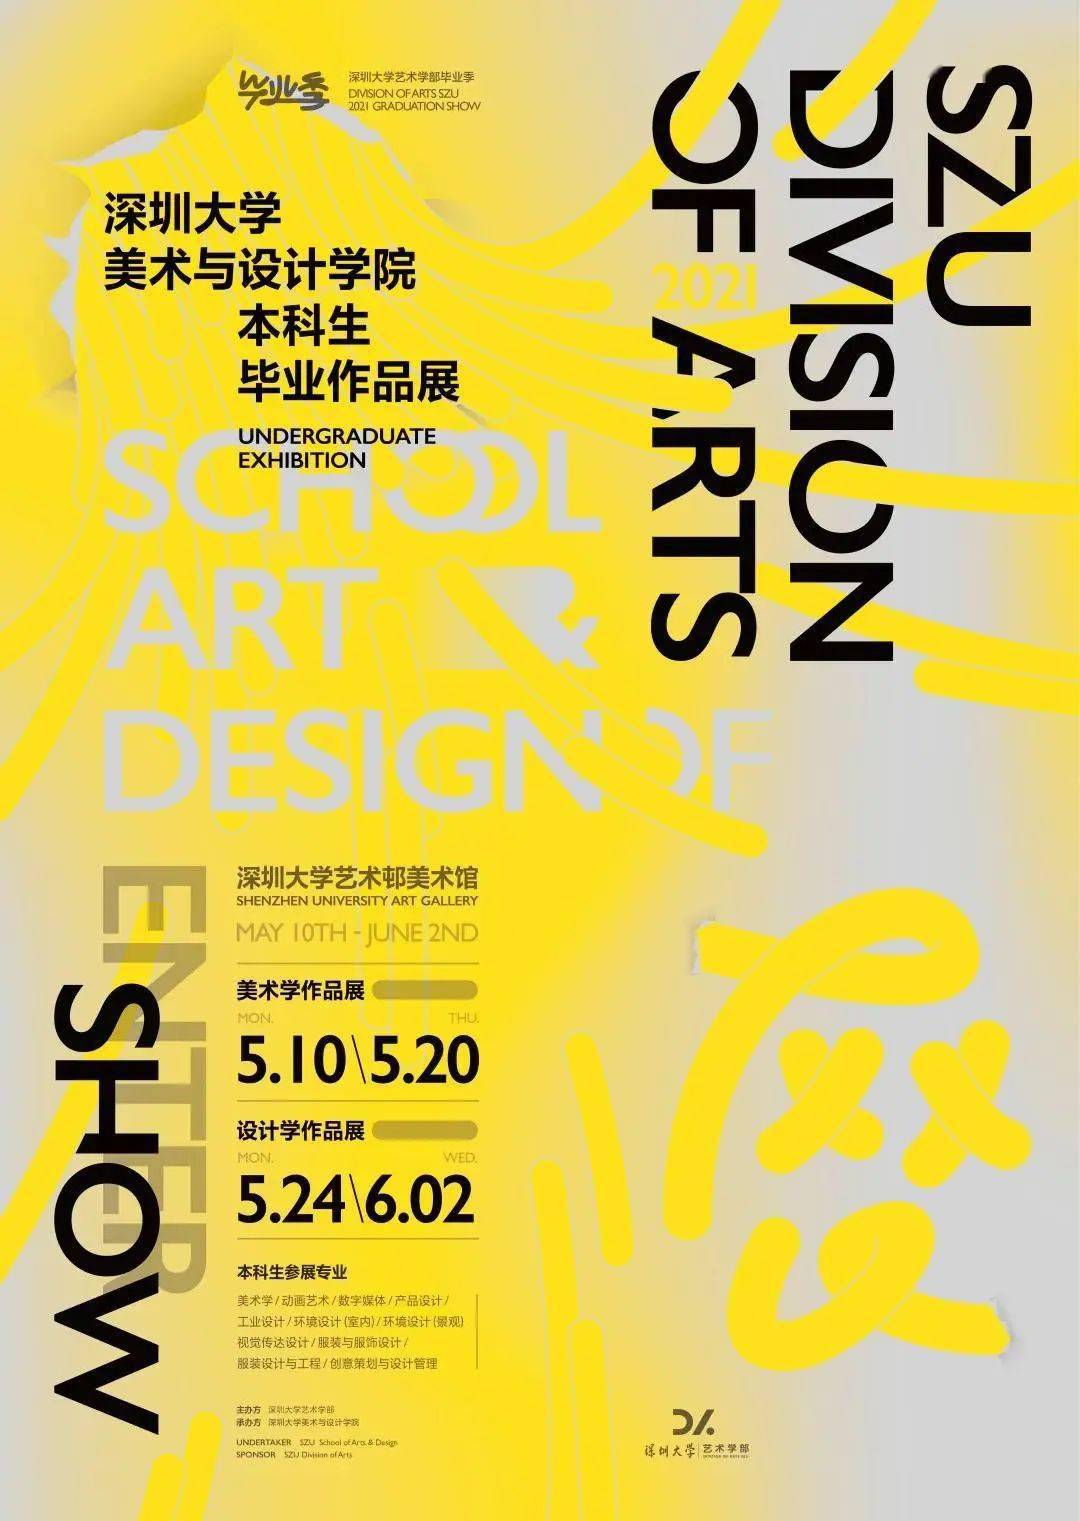 展会信息海报_上海设计展会设计搭建_展会海报设计